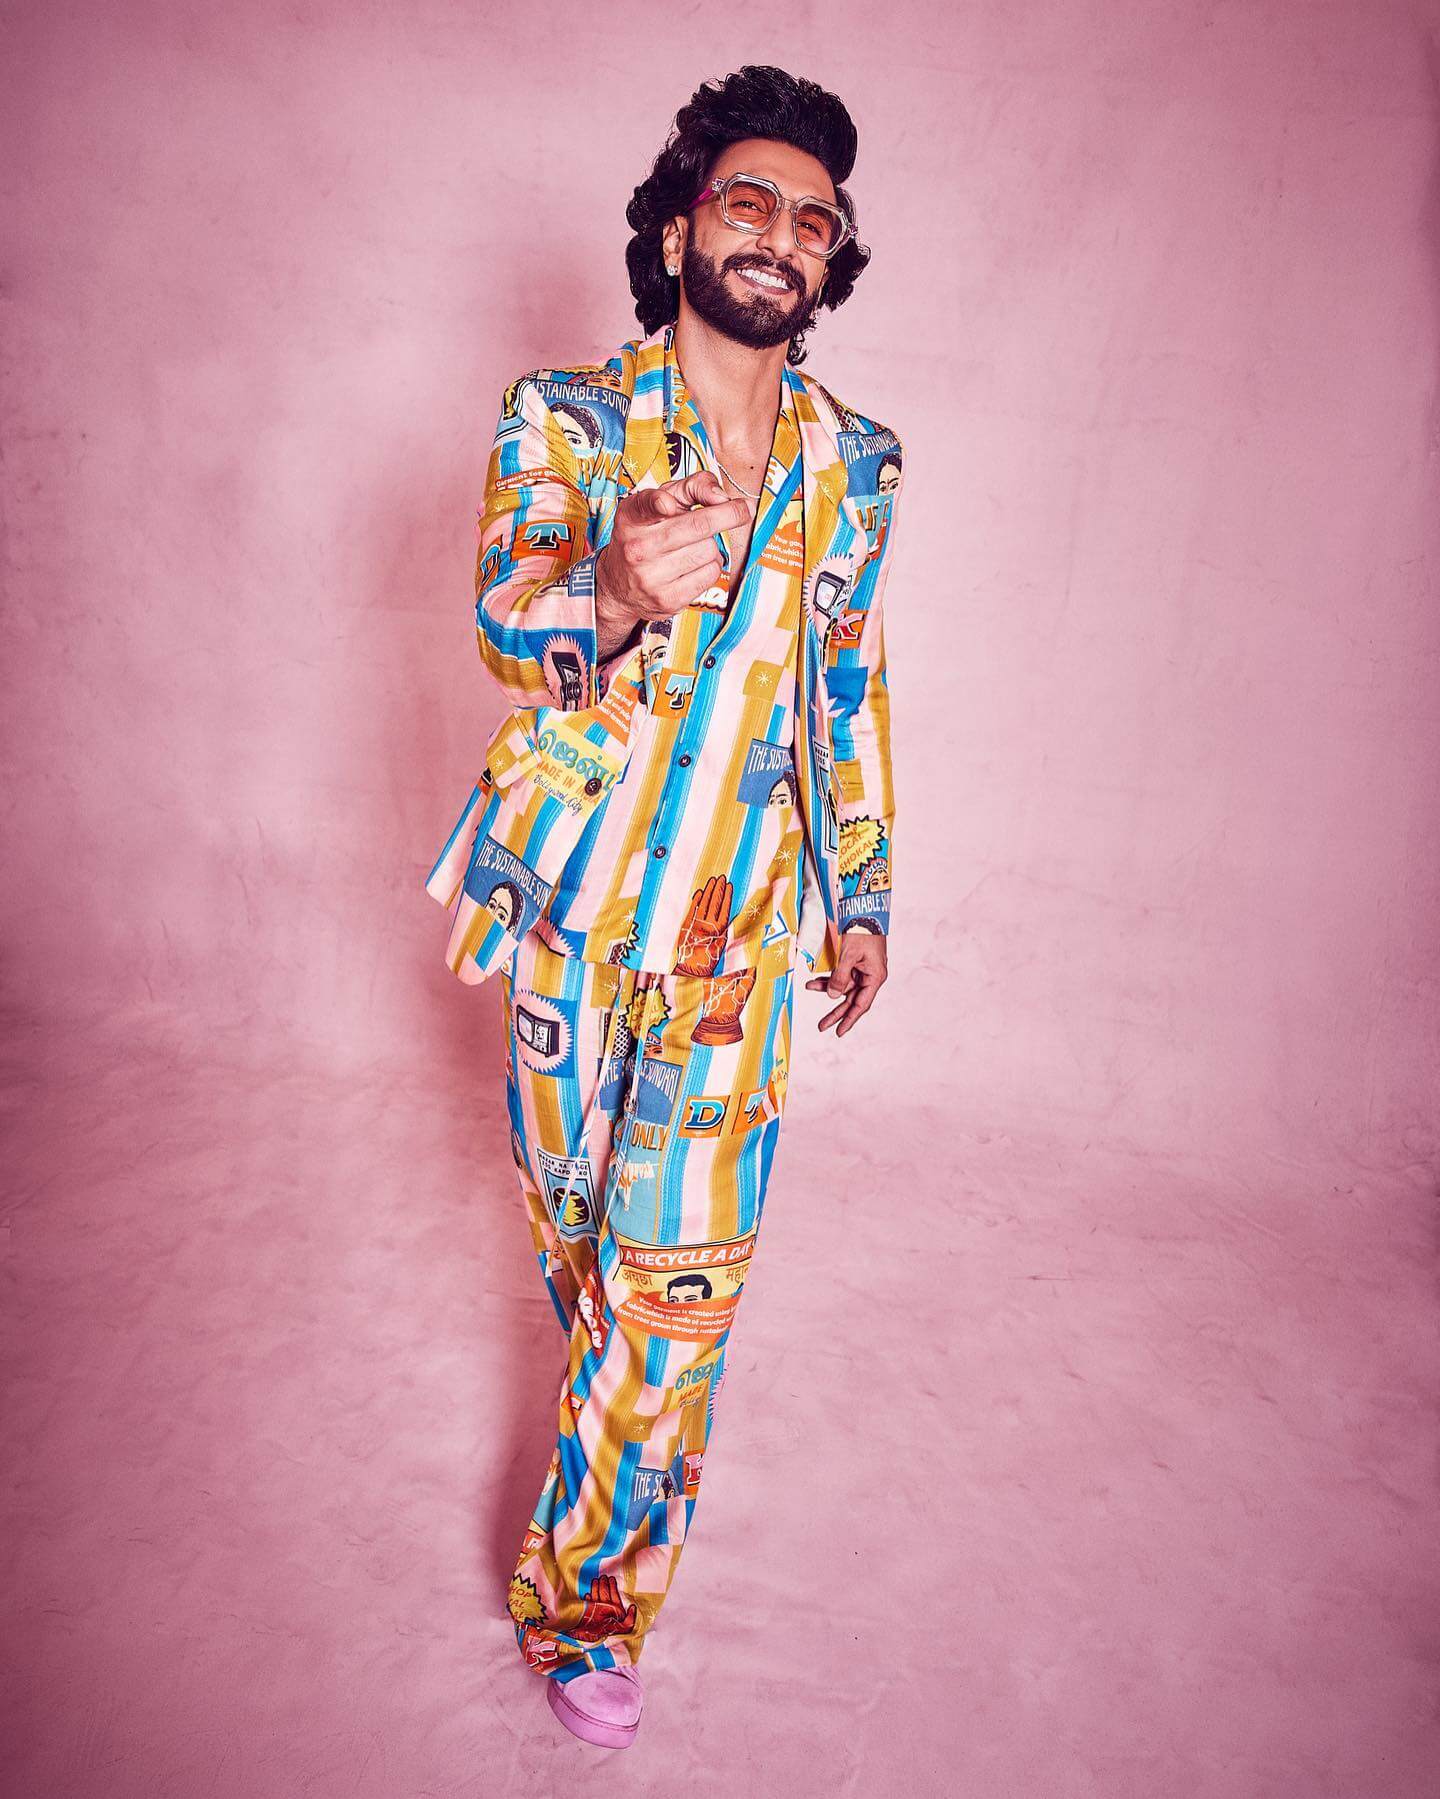 Actor Ranveer Singh in colorful outfit